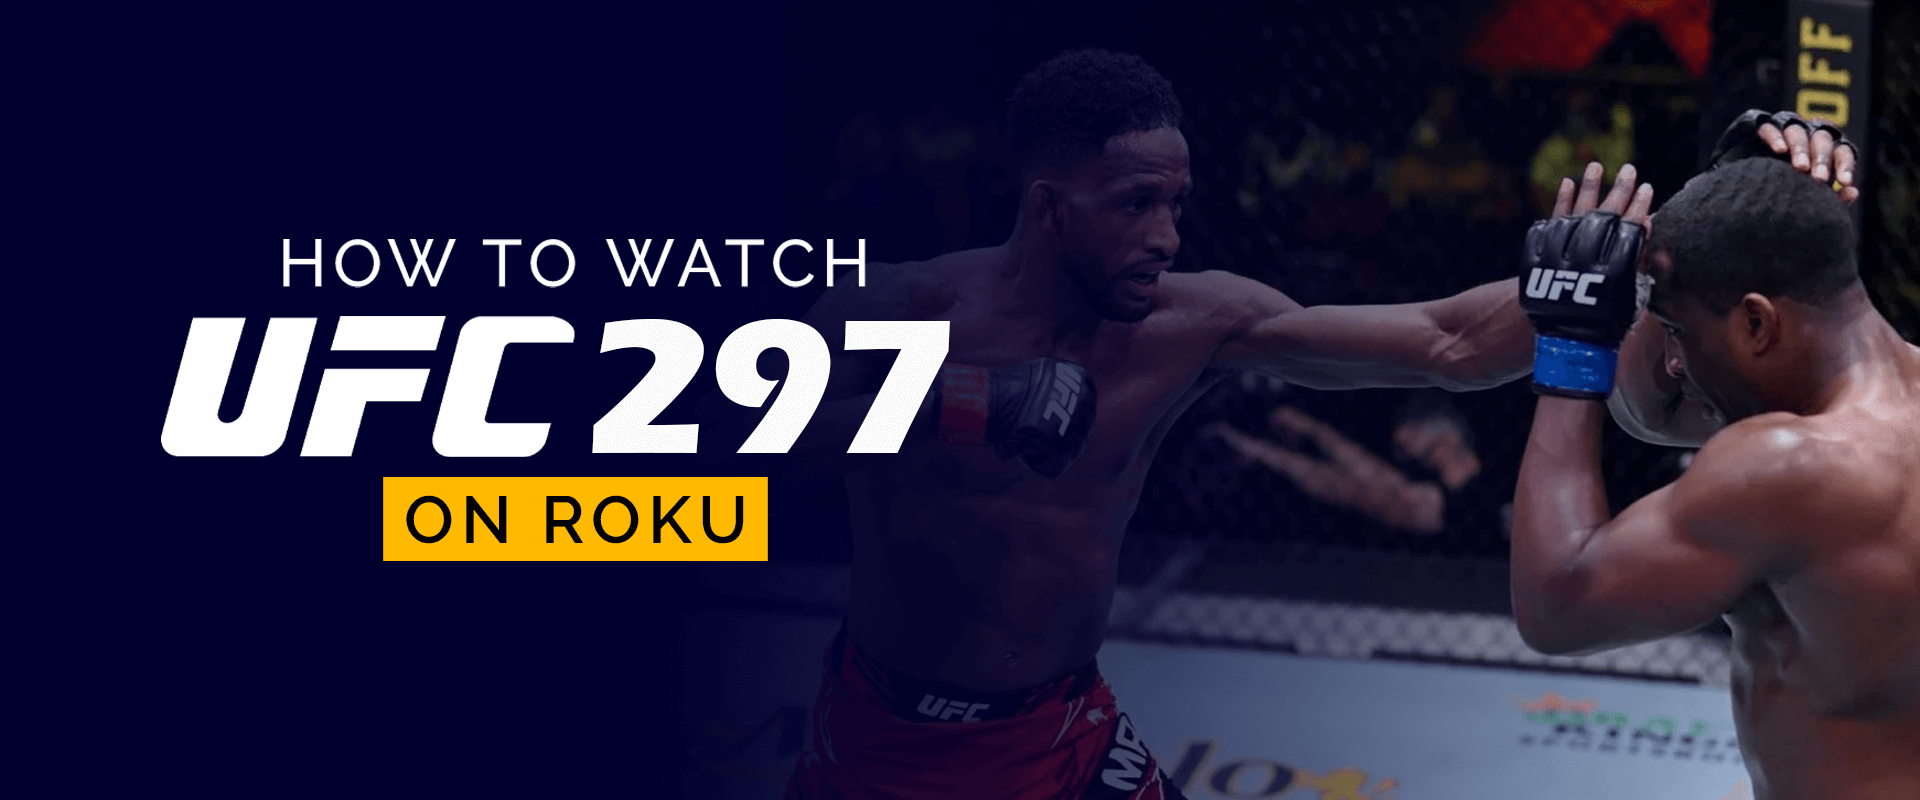 Roku'da UFC 297 Nasıl İzlenir